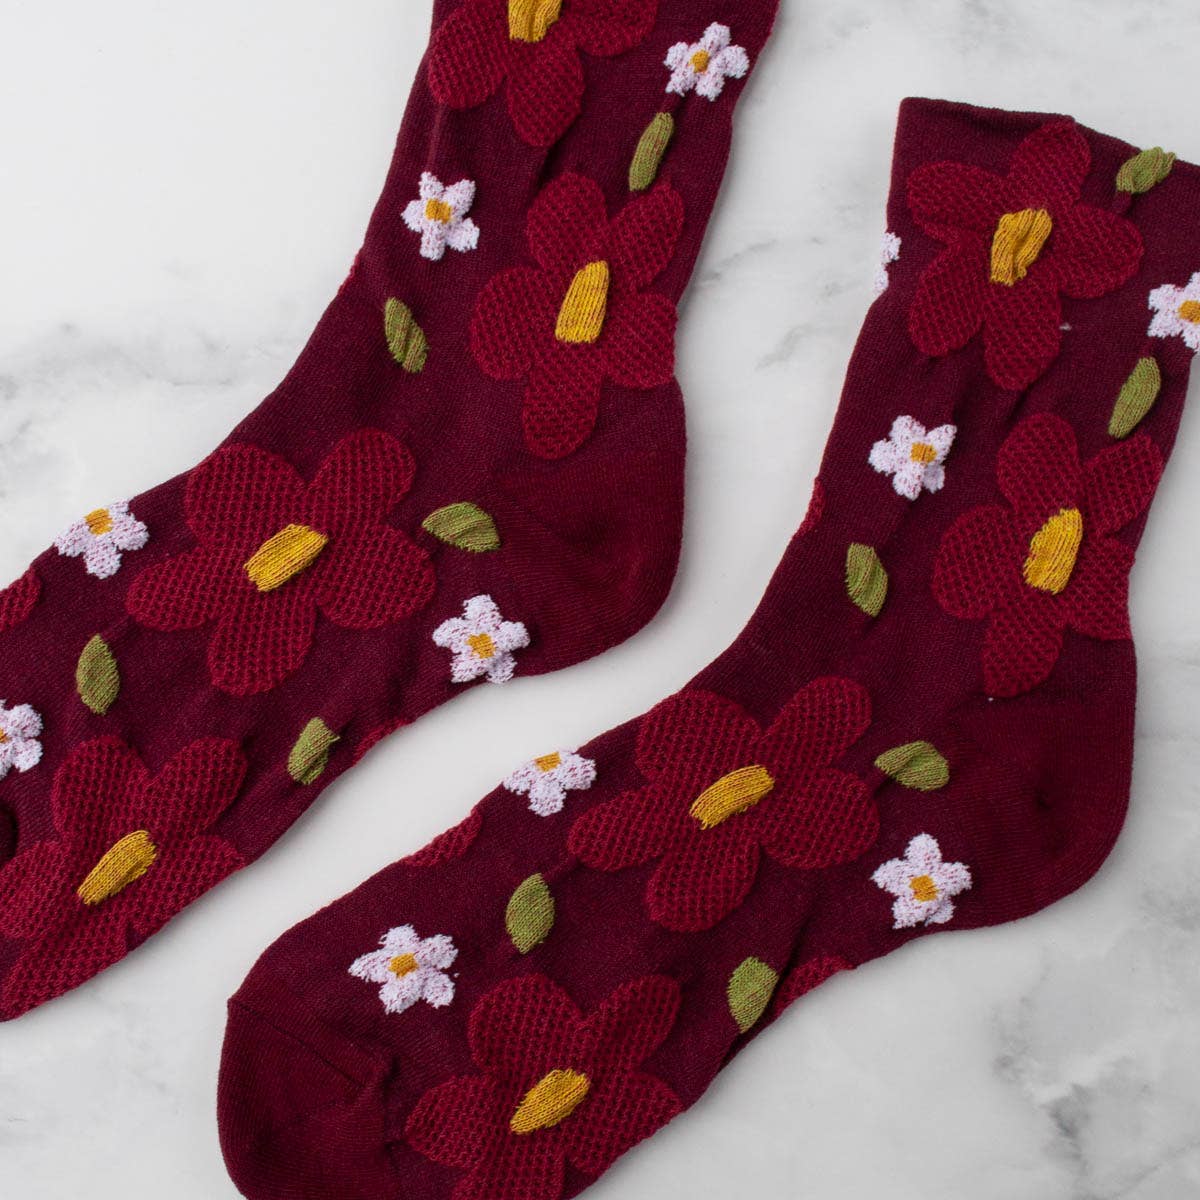 Vintage Daisy flower socks: Taupe/black